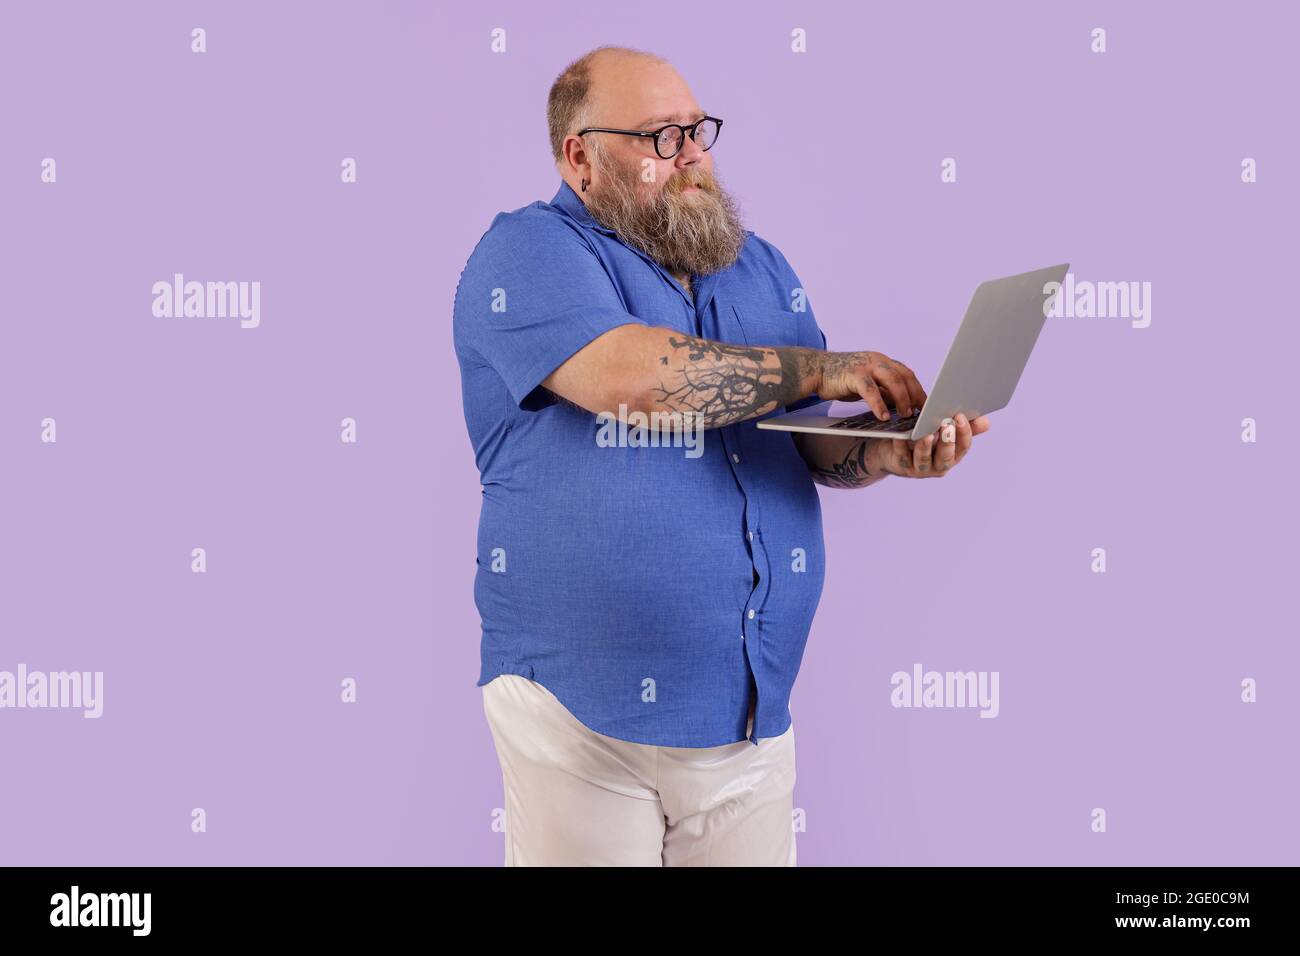 Ein emotionaler Mann mit Übergewicht arbeitet auf einem Laptop, der im Studio auf violettem Hintergrund steht Stockfoto